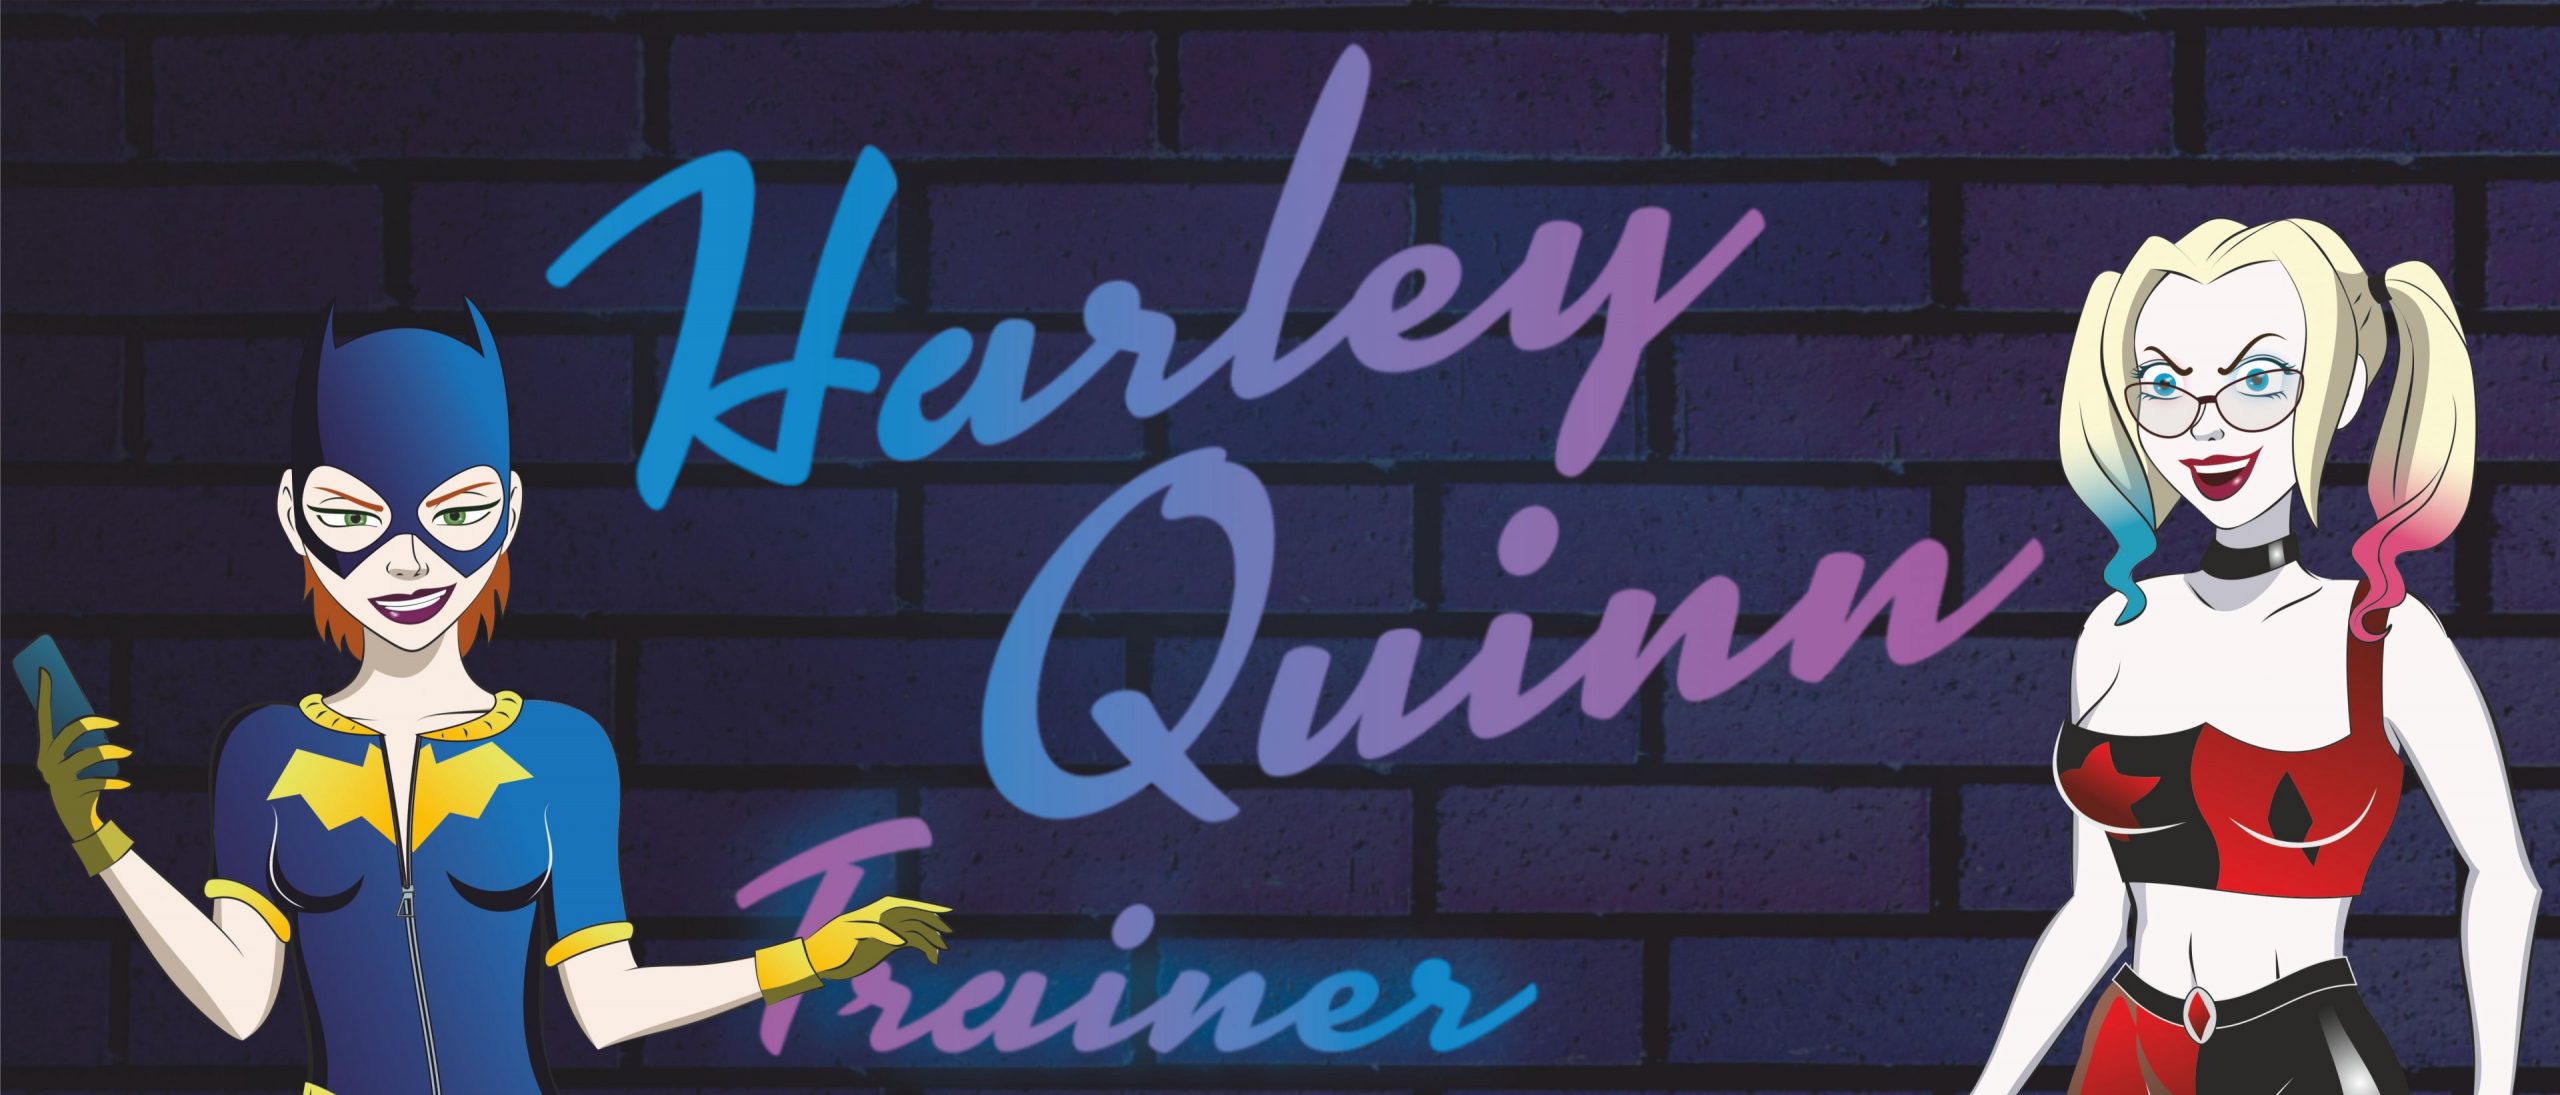 Harley quinn porn games